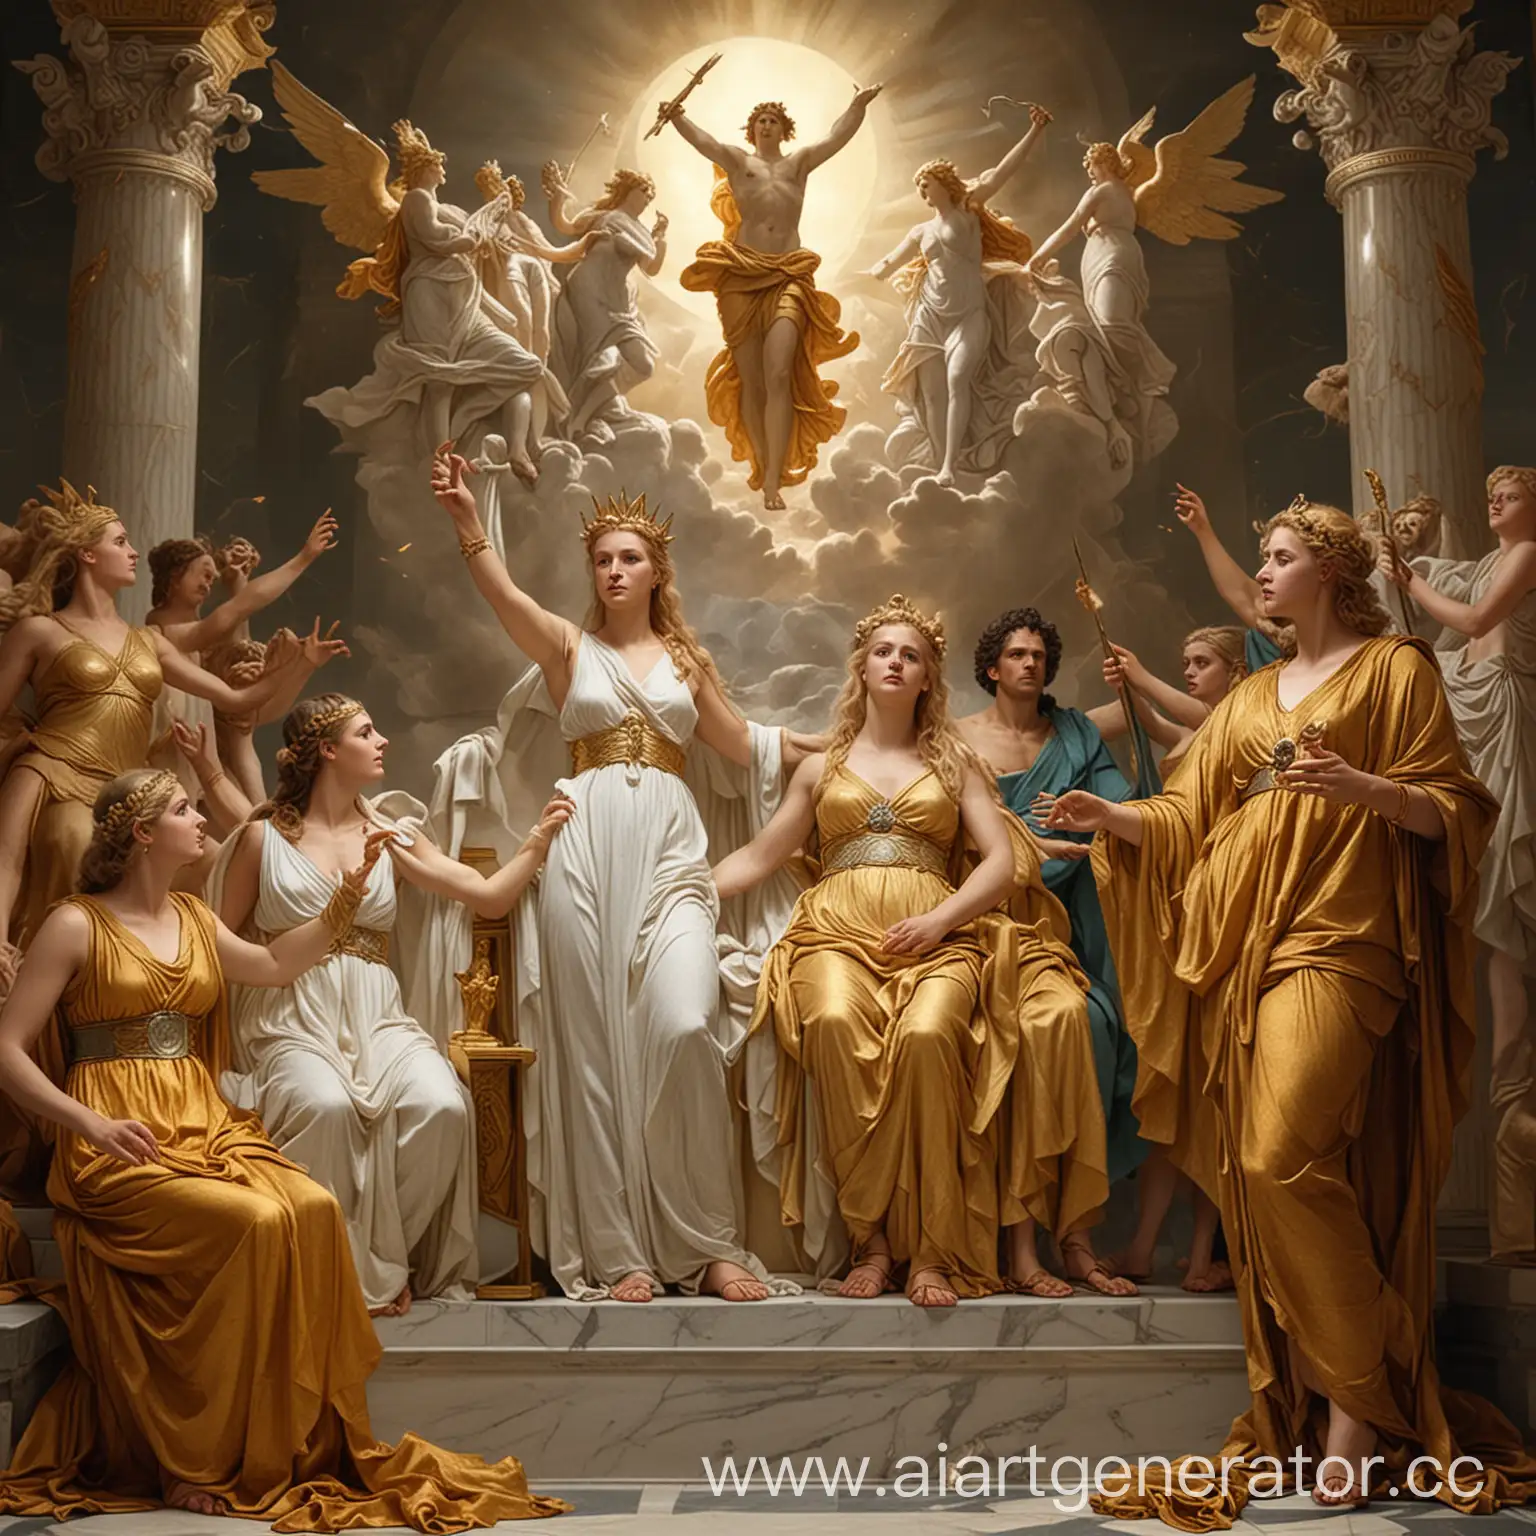 Высоко на светлом Олимпе царит Зевс, окруженный сонмом богов. Здесь и супруга его
Гера, и златокудрый Аполлон с сестрой своей Артемидой, и златая Афродита, и могучая дочь
Зевса Афина 
, и много других богов